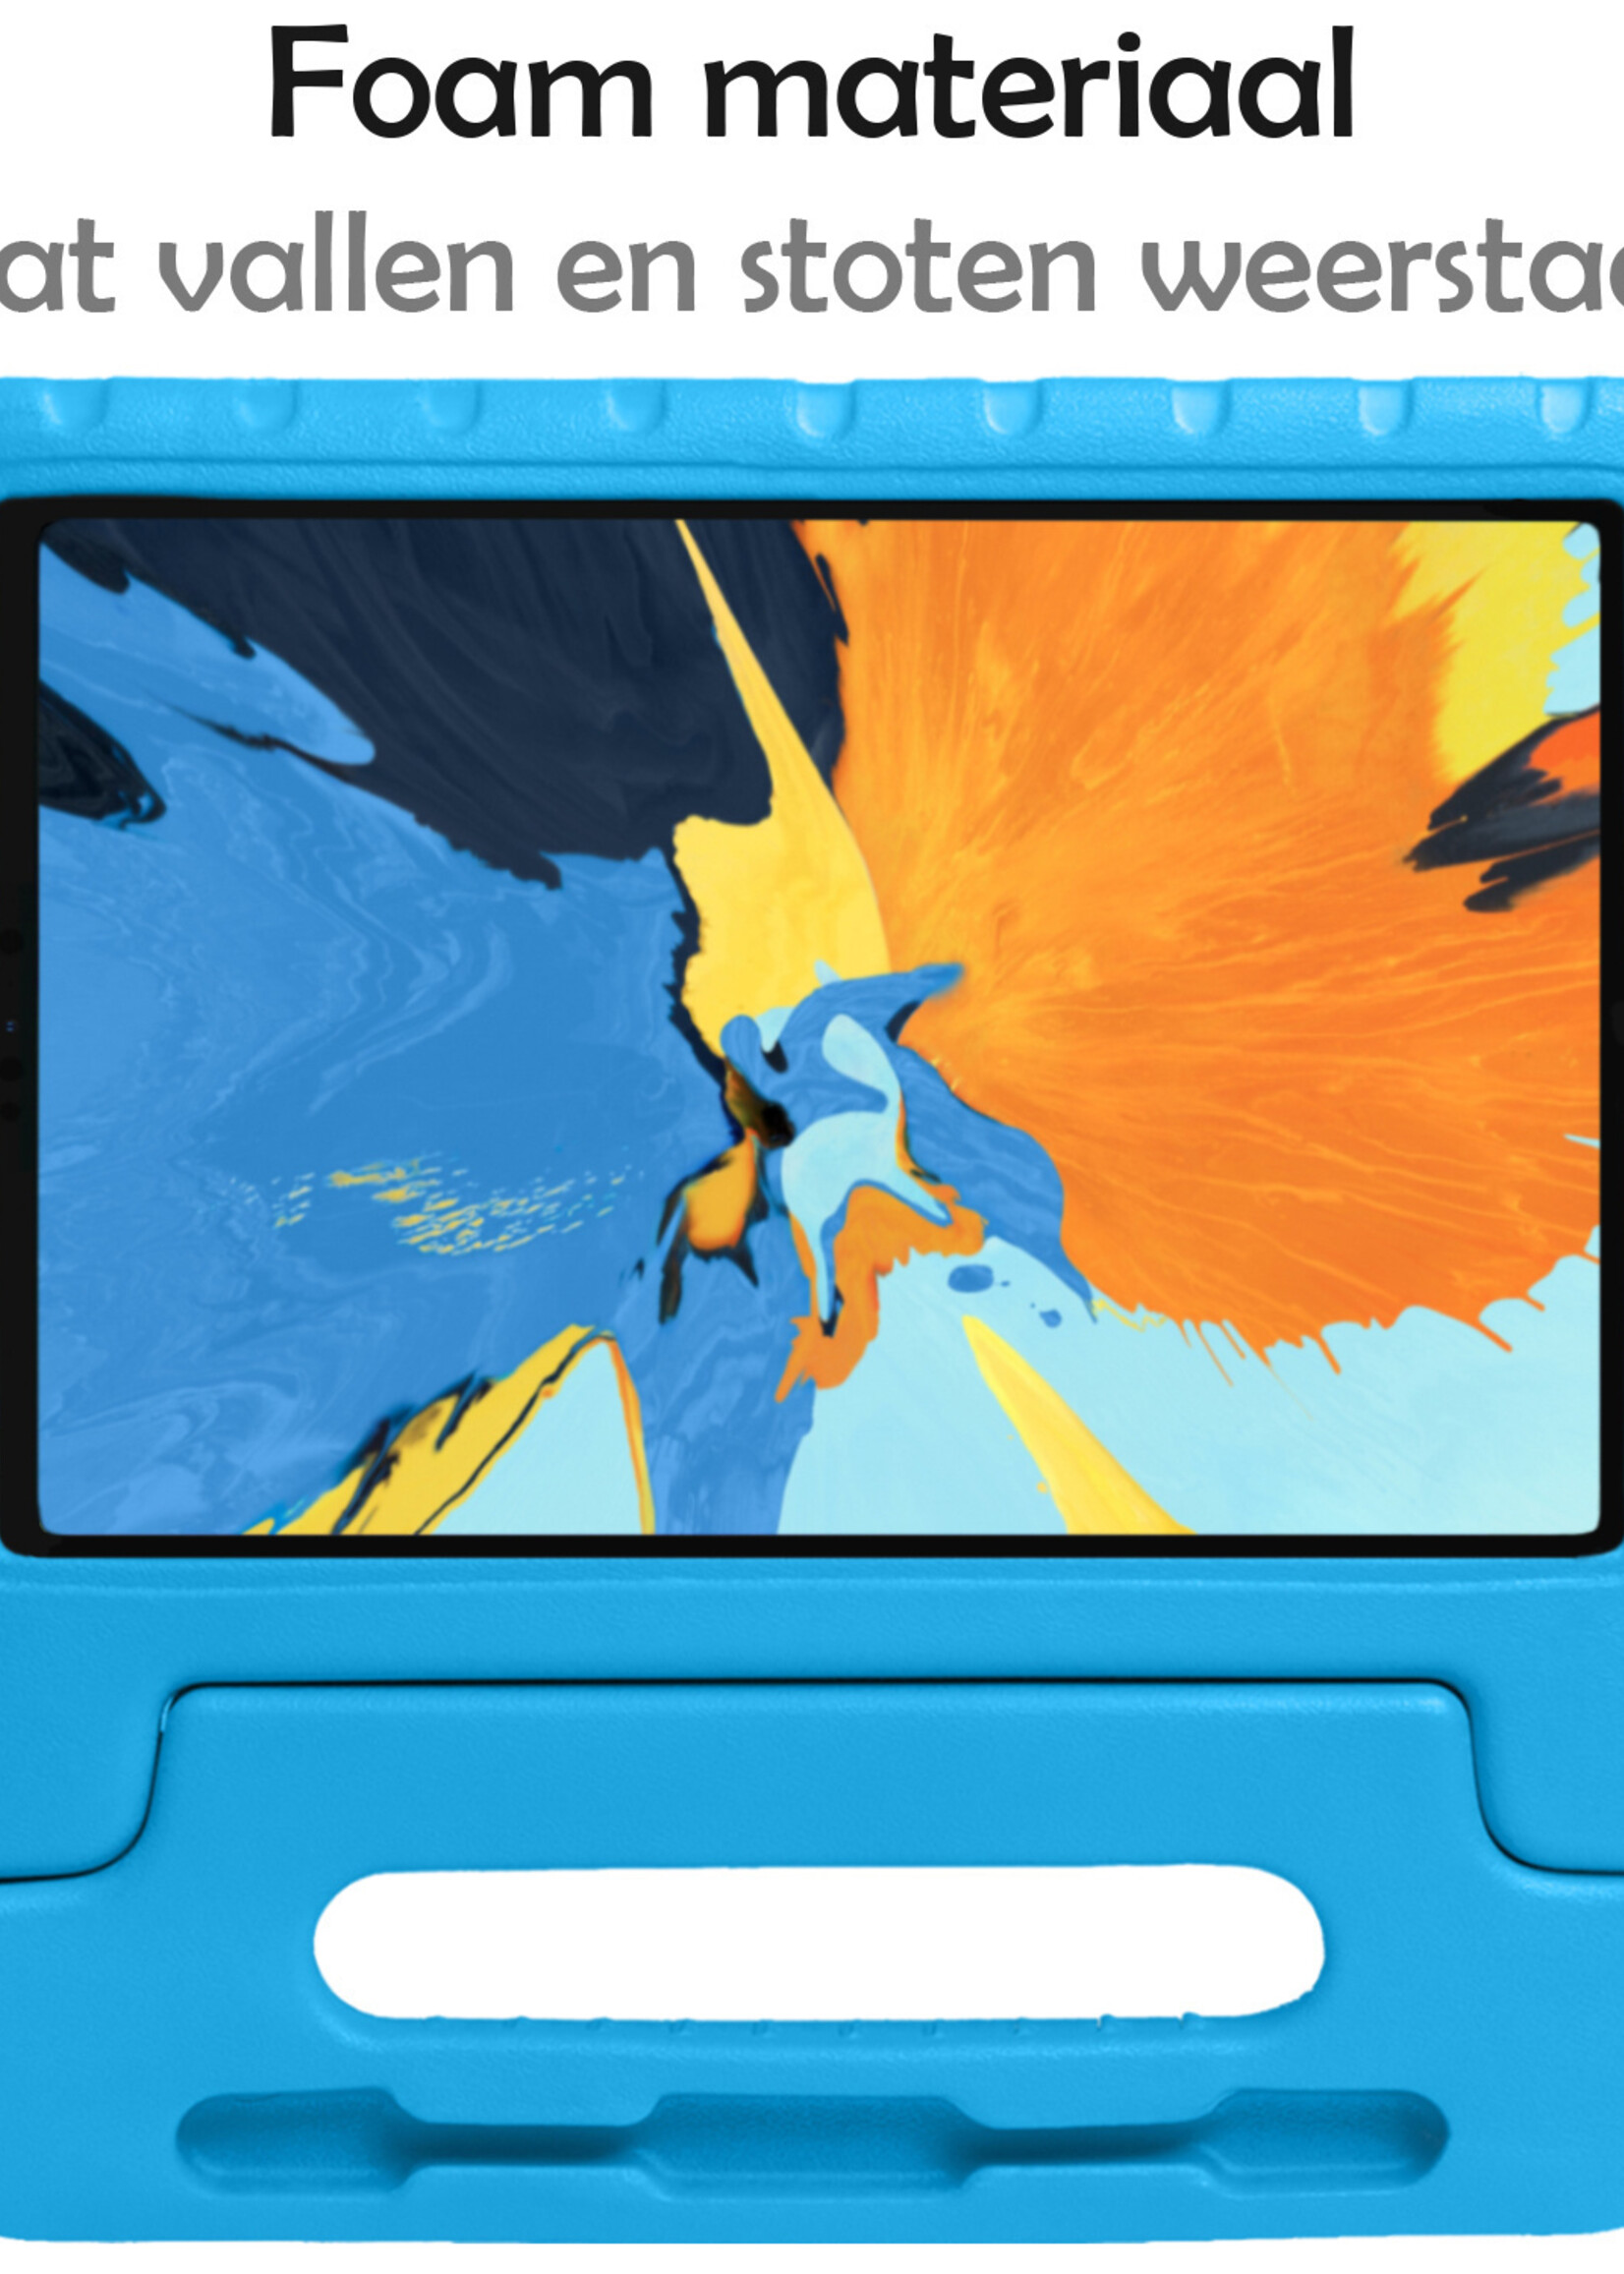 LUQ Hoes Geschikt voor iPad Pro 2018 (11 inch) Hoes Kinder Hoesje Kids Case Kinderhoes Shockproof Met Screenprotector - Hoesje Geschikt voor iPad Pro 11 inch (2018) Hoesje Kidscase - Blauw